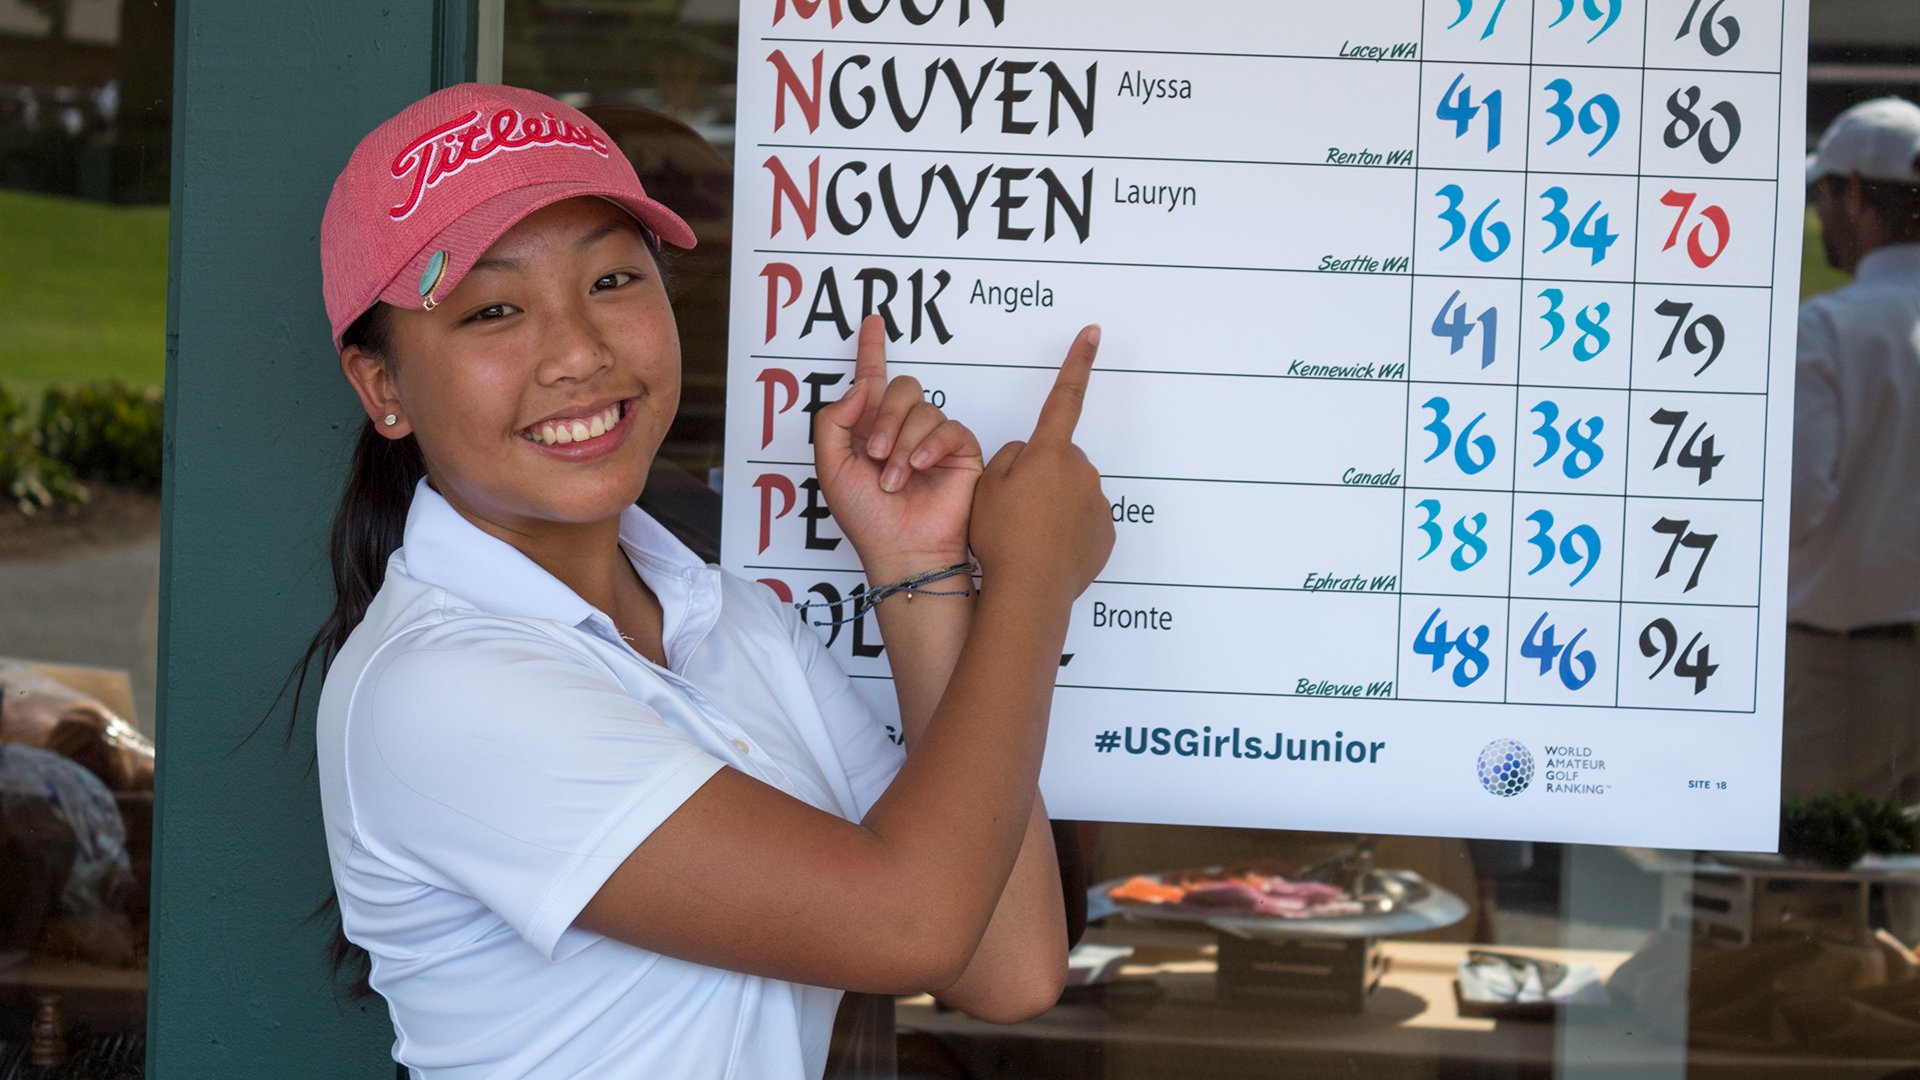 Golfer nhí gốc Việt giành vé dự U.S. Girls’ Junior Championship 2018